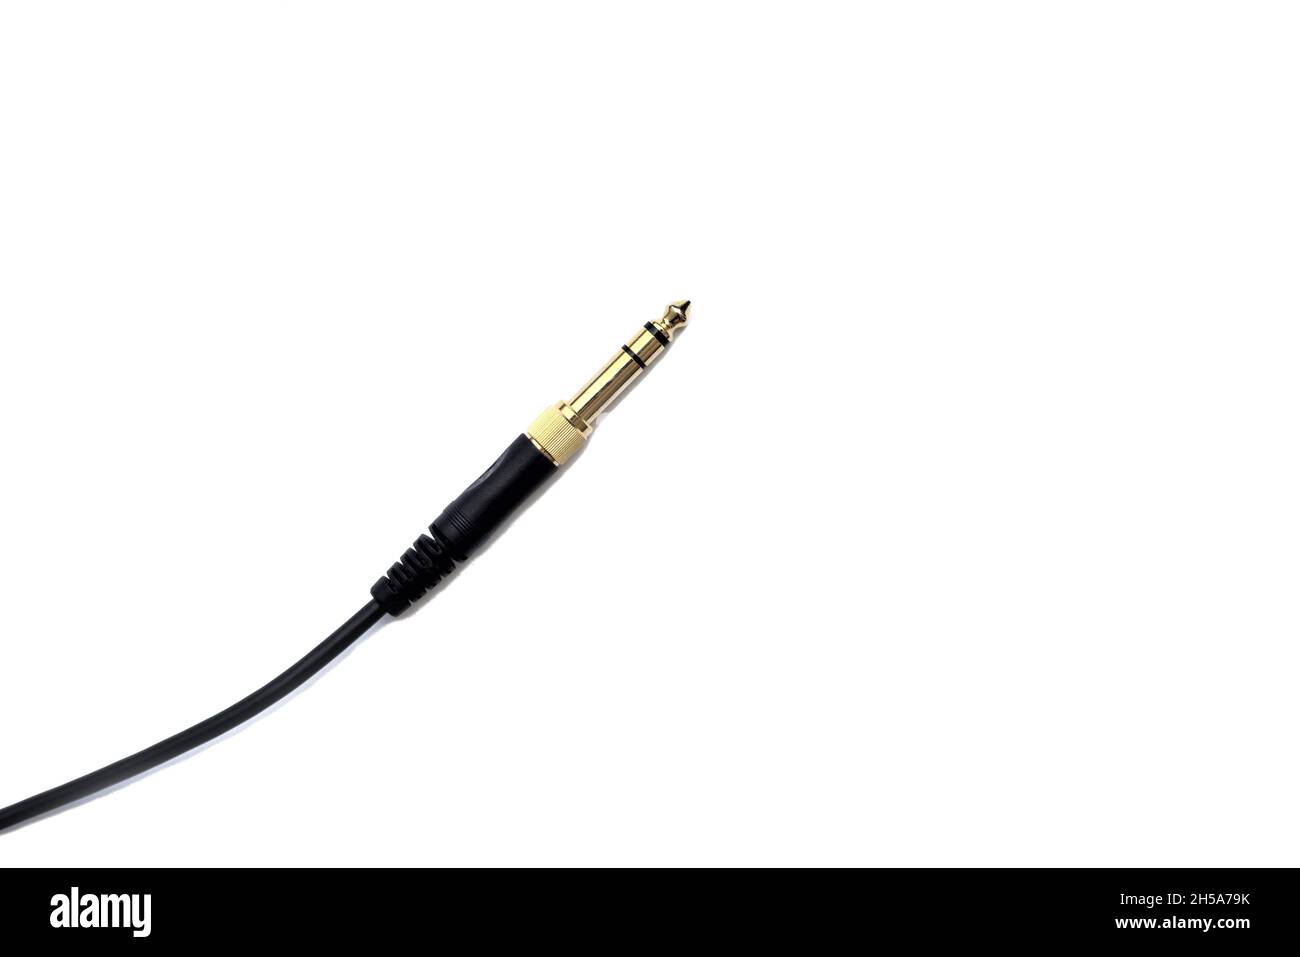 Stereo-Audio-Kopfhörerbuchse mit Kabel auf weißem Hintergrund. Vergoldete Klinkenbuchse zum Anschluss von Audiogeräten und Musikinstrumenten. Stockfoto